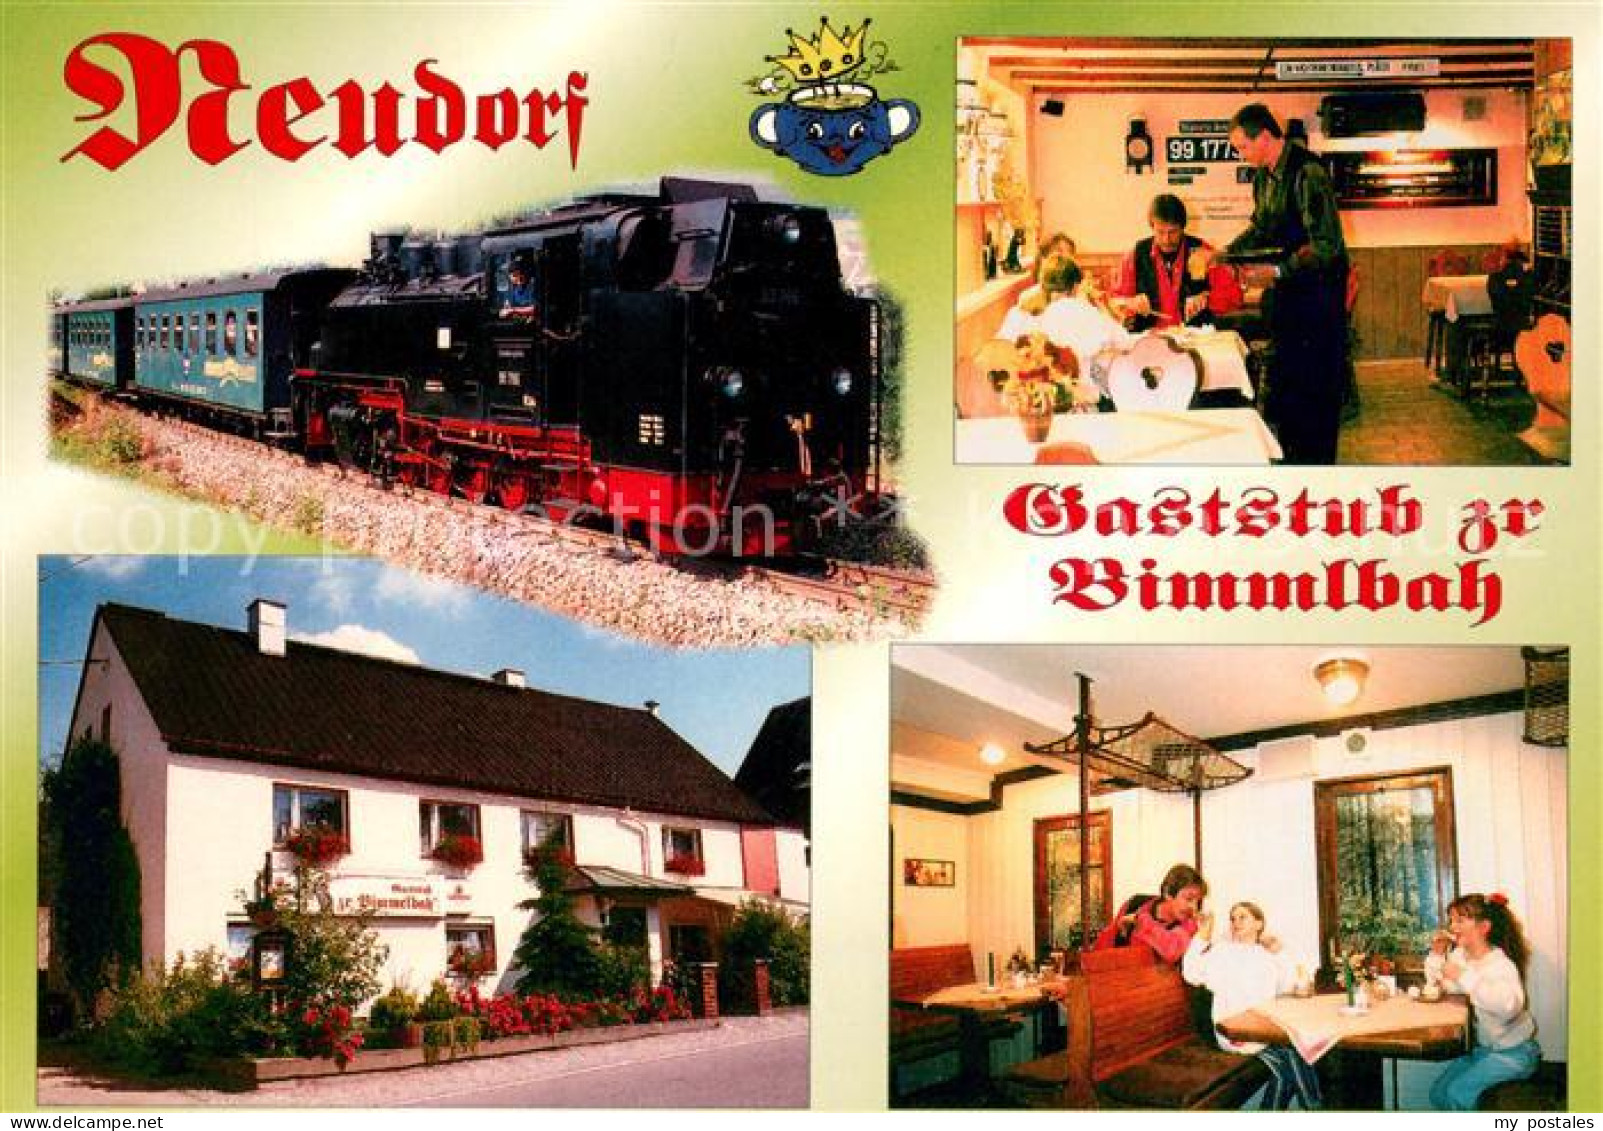 73657856 Neudorf Annaberg Gaststub Zr Bimmlbah Eisenbahn Dampflokomotive Neudorf - Annaberg-Buchholz